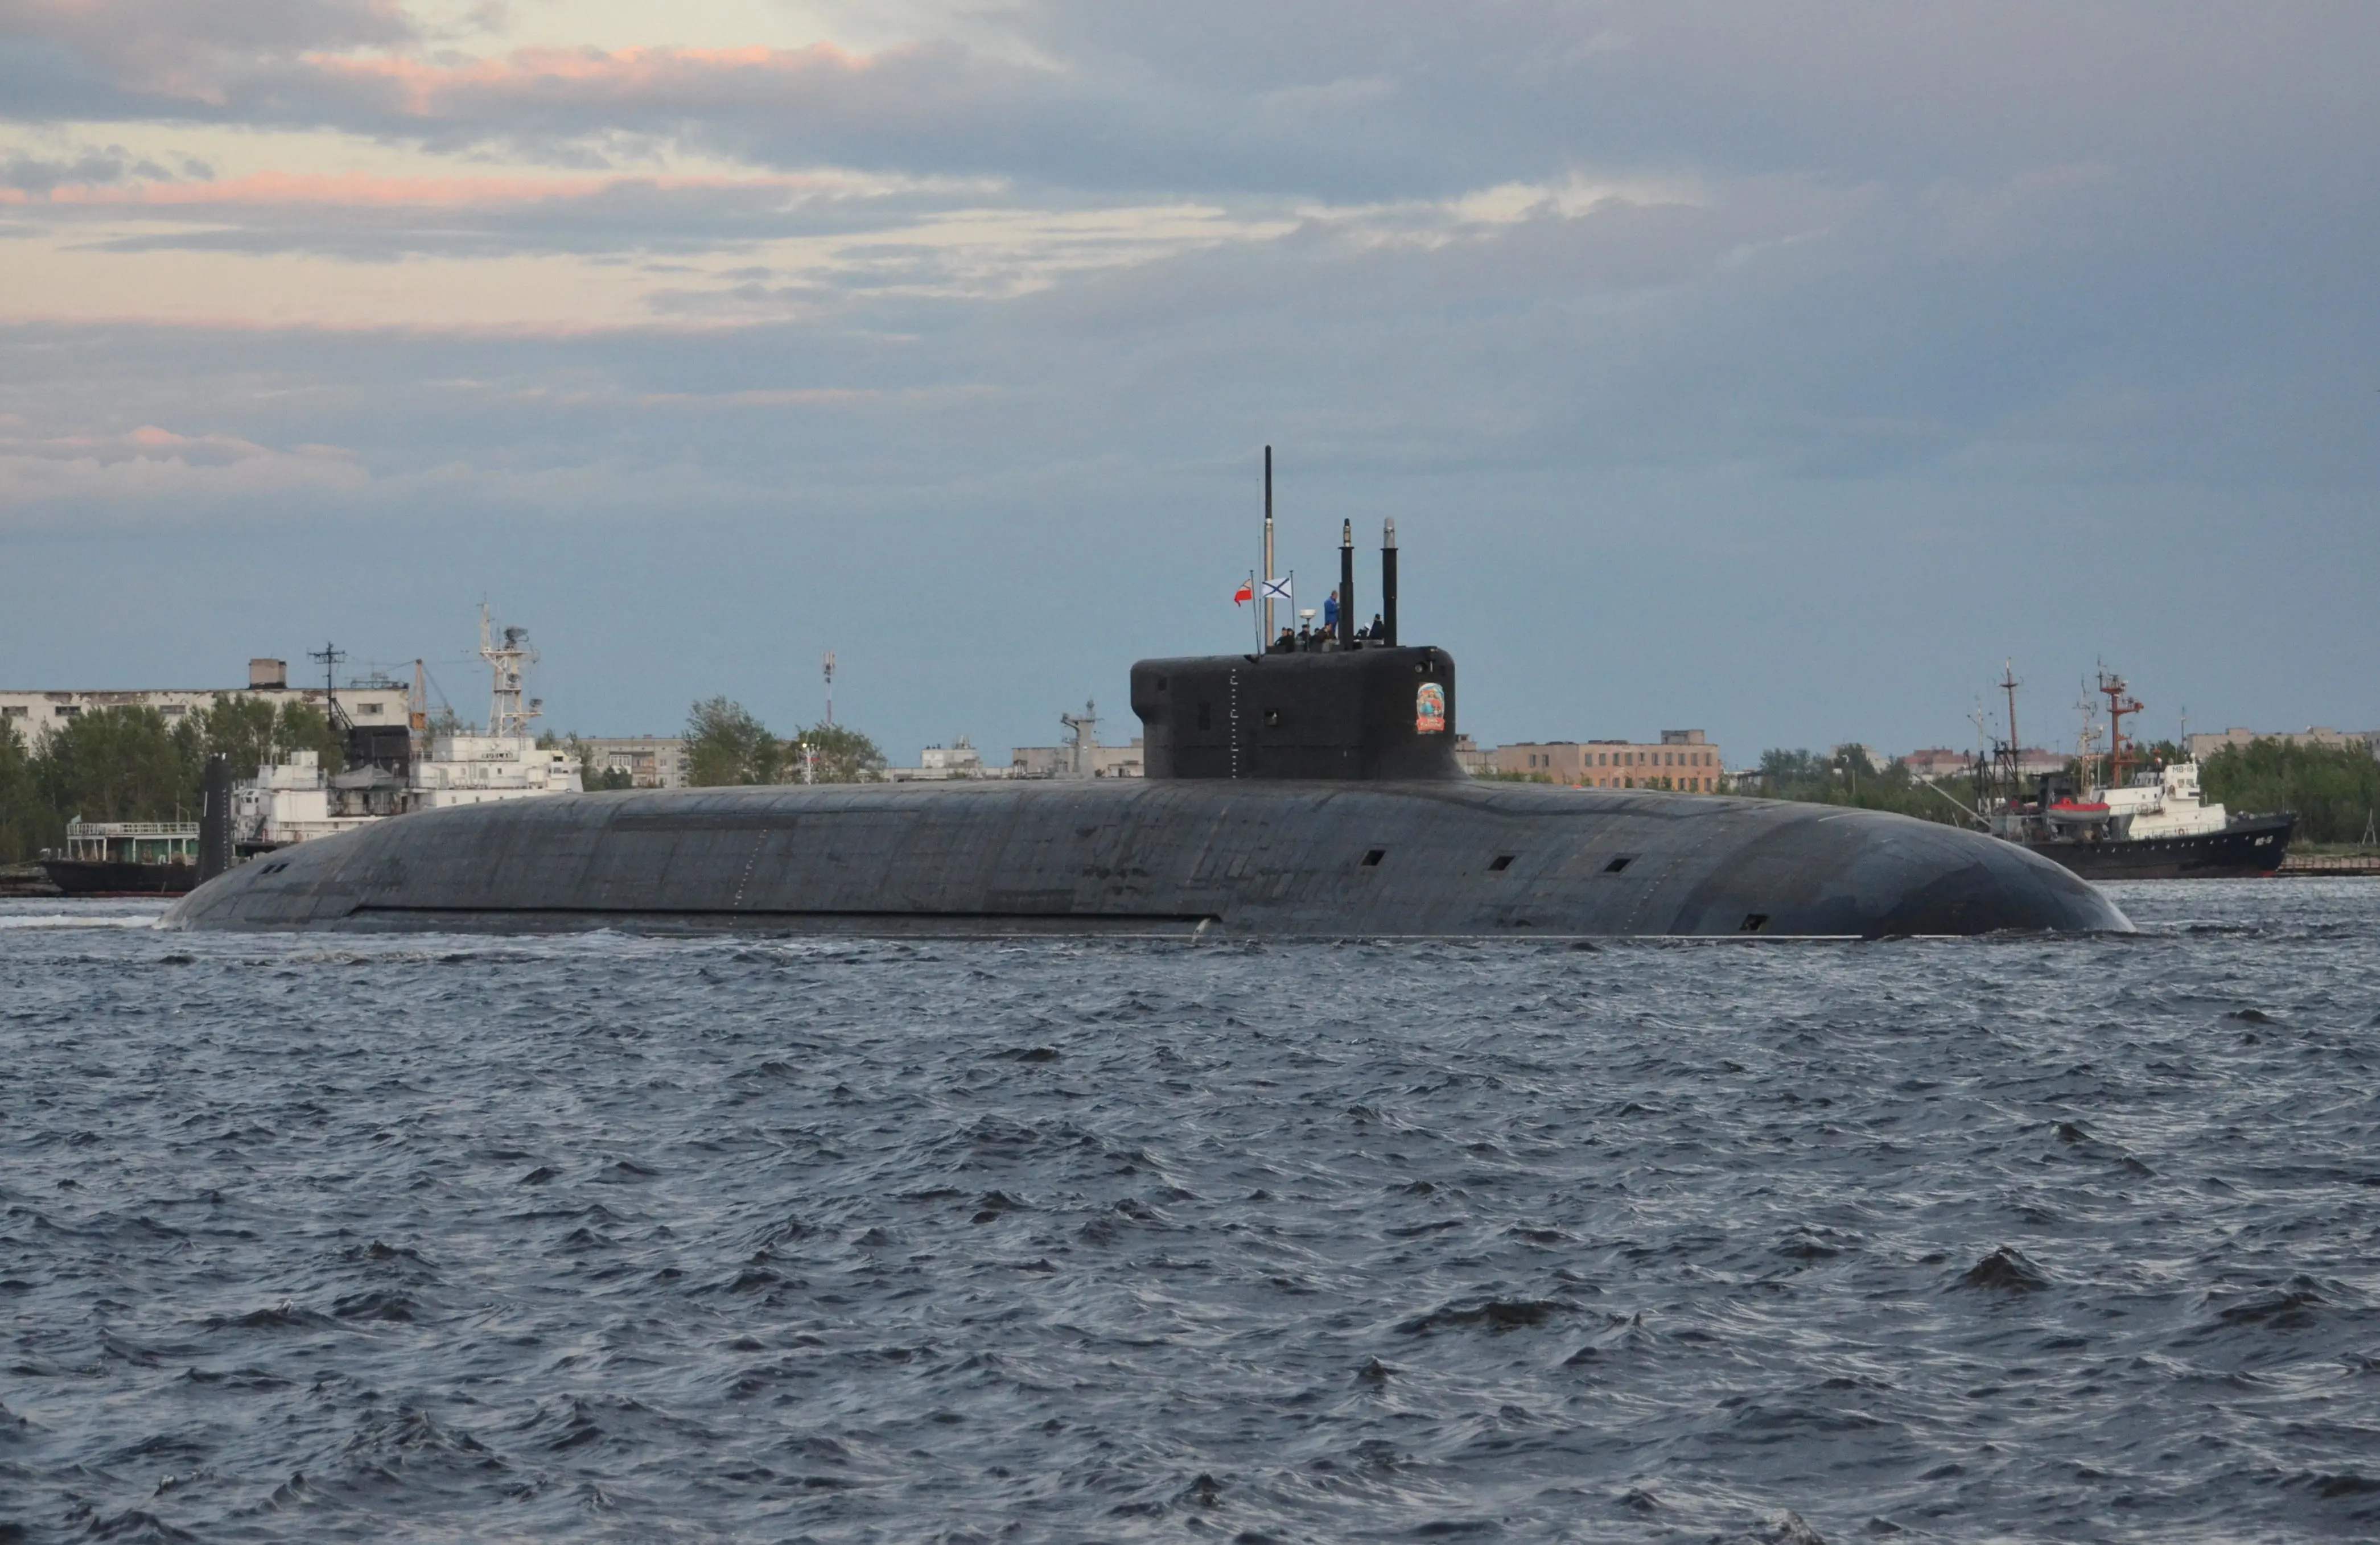 原创 对美军发出警告信号,全球最强核潜艇出海,可携16枚航母杀手